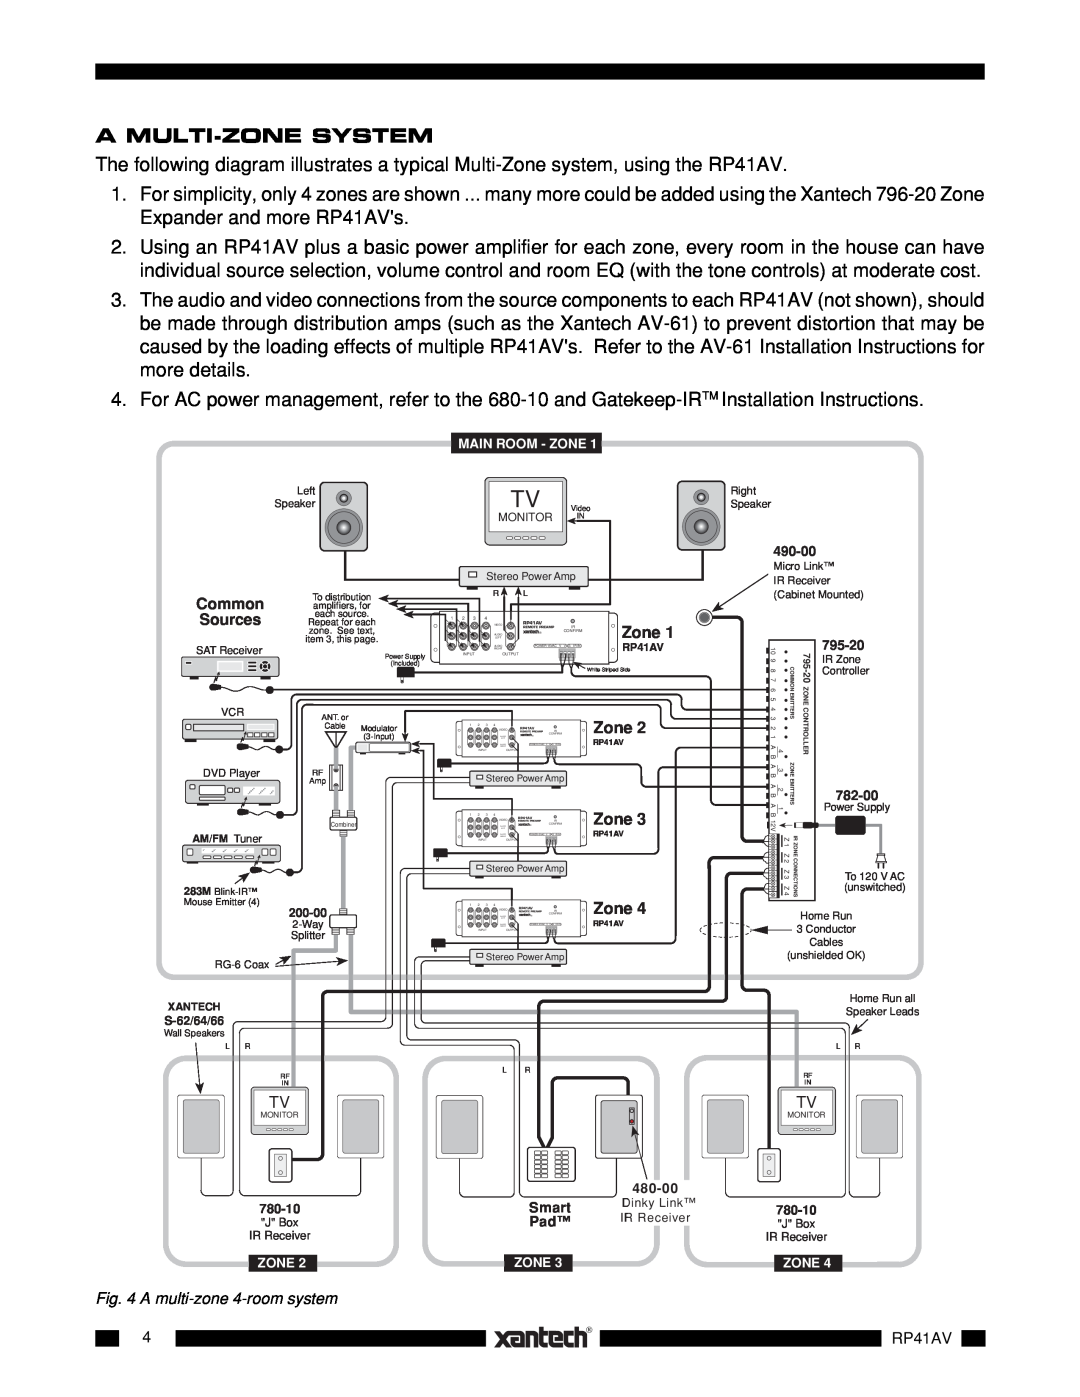 Xantech RP41AV installation instructions A Multi-Zonesystem 